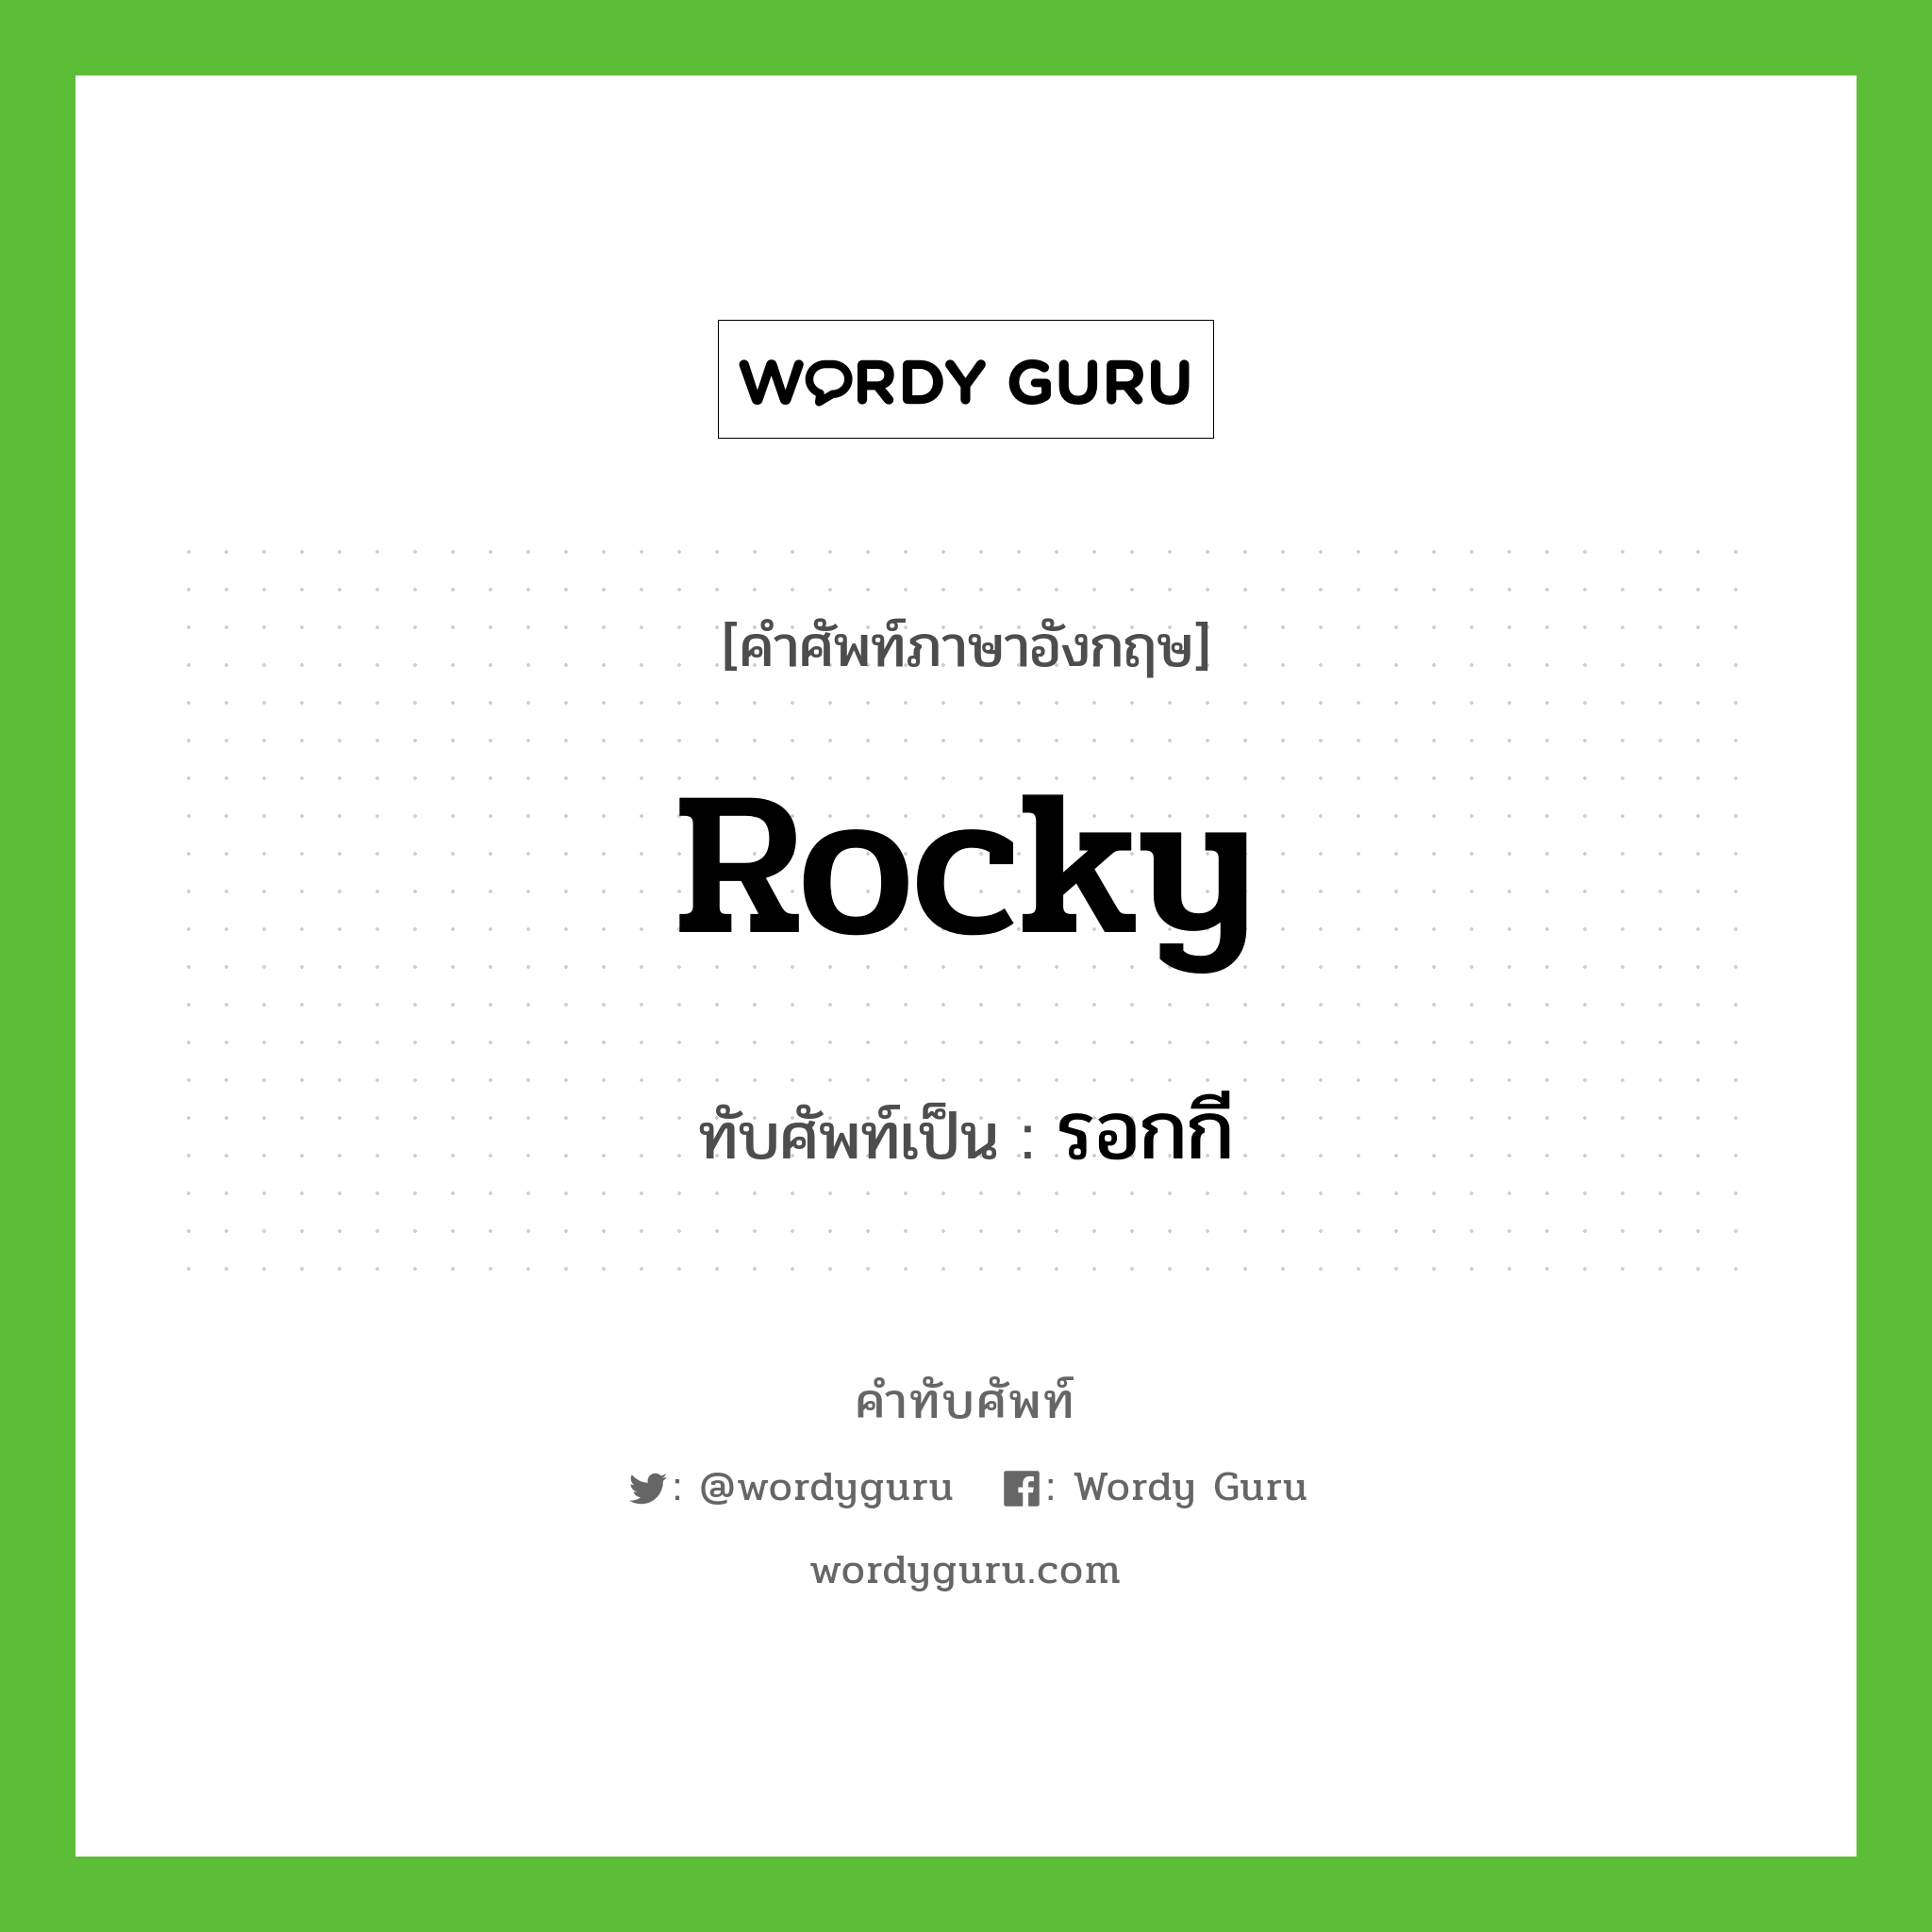 Rocky เขียนเป็นคำไทยว่าอะไร?, คำศัพท์ภาษาอังกฤษ Rocky ทับศัพท์เป็น รอกกี